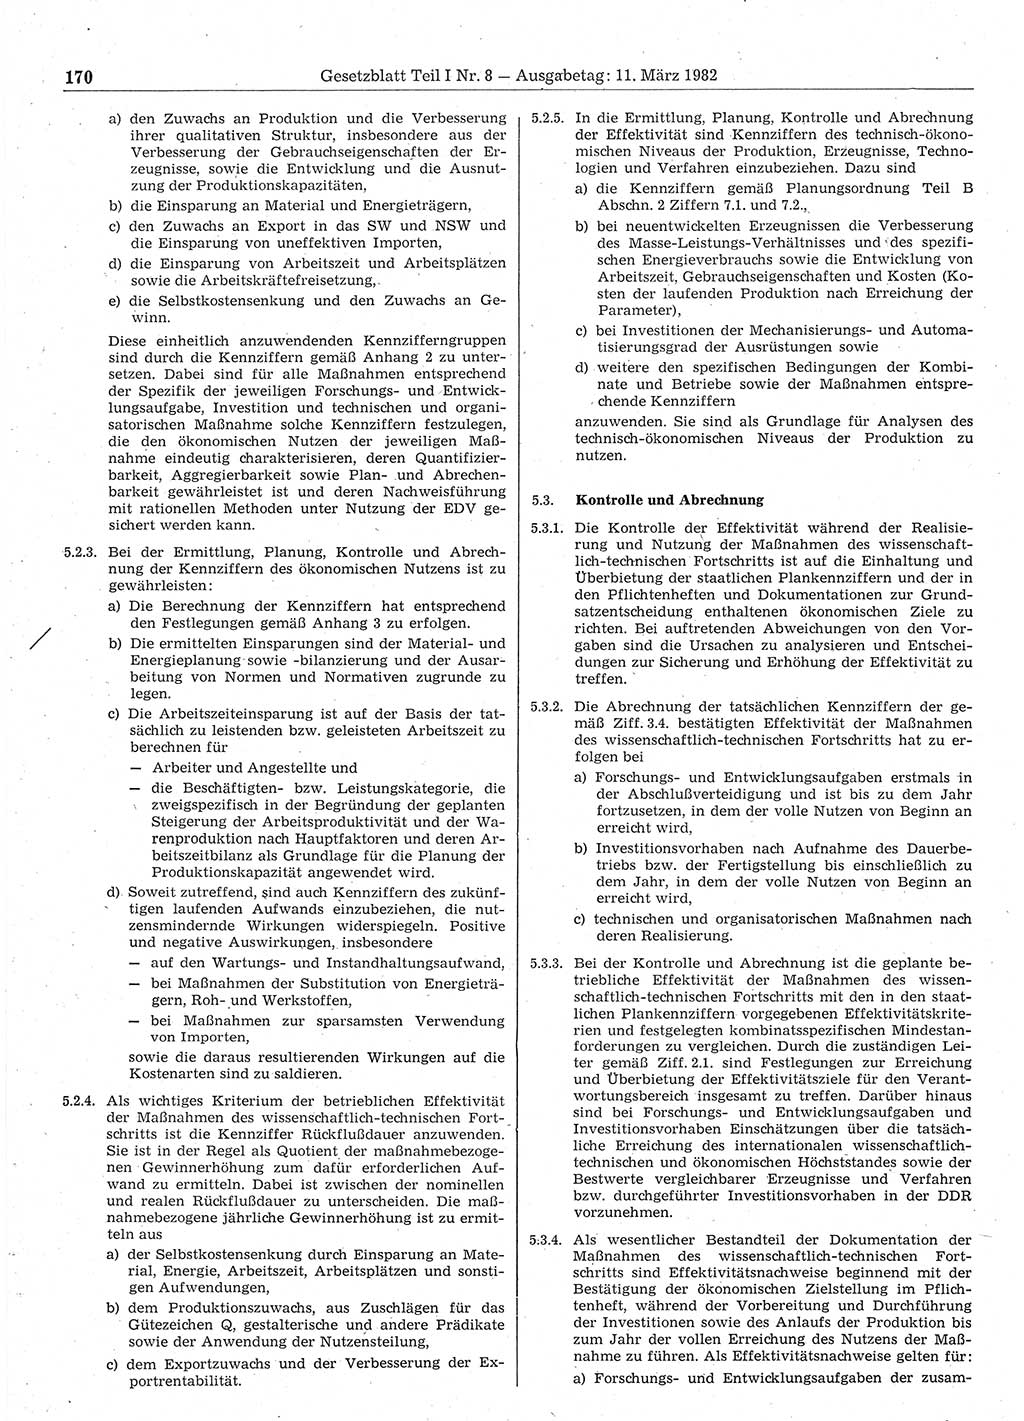 Gesetzblatt (GBl.) der Deutschen Demokratischen Republik (DDR) Teil Ⅰ 1982, Seite 170 (GBl. DDR Ⅰ 1982, S. 170)